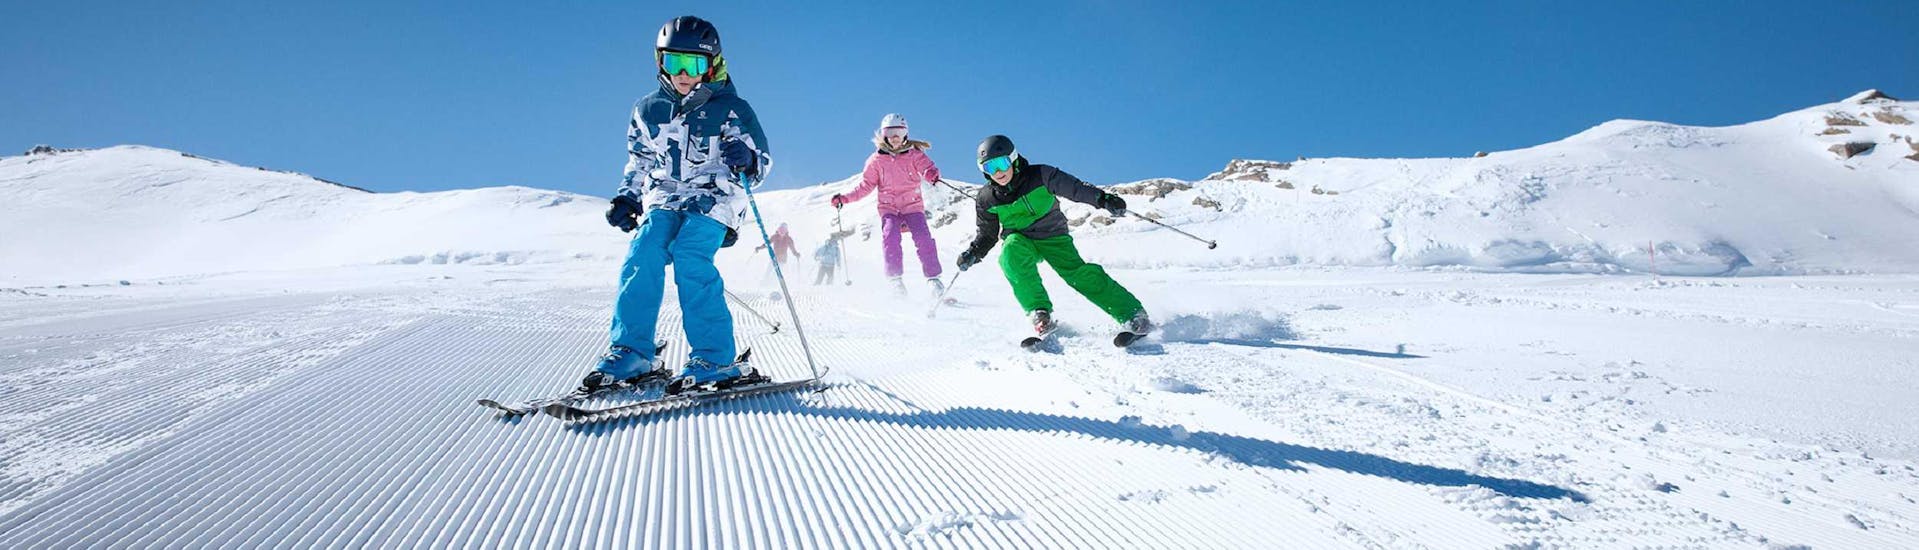 Cours de ski Enfants dès 4 ans - Avancé avec Skischule Ski Dome Viehhofen.